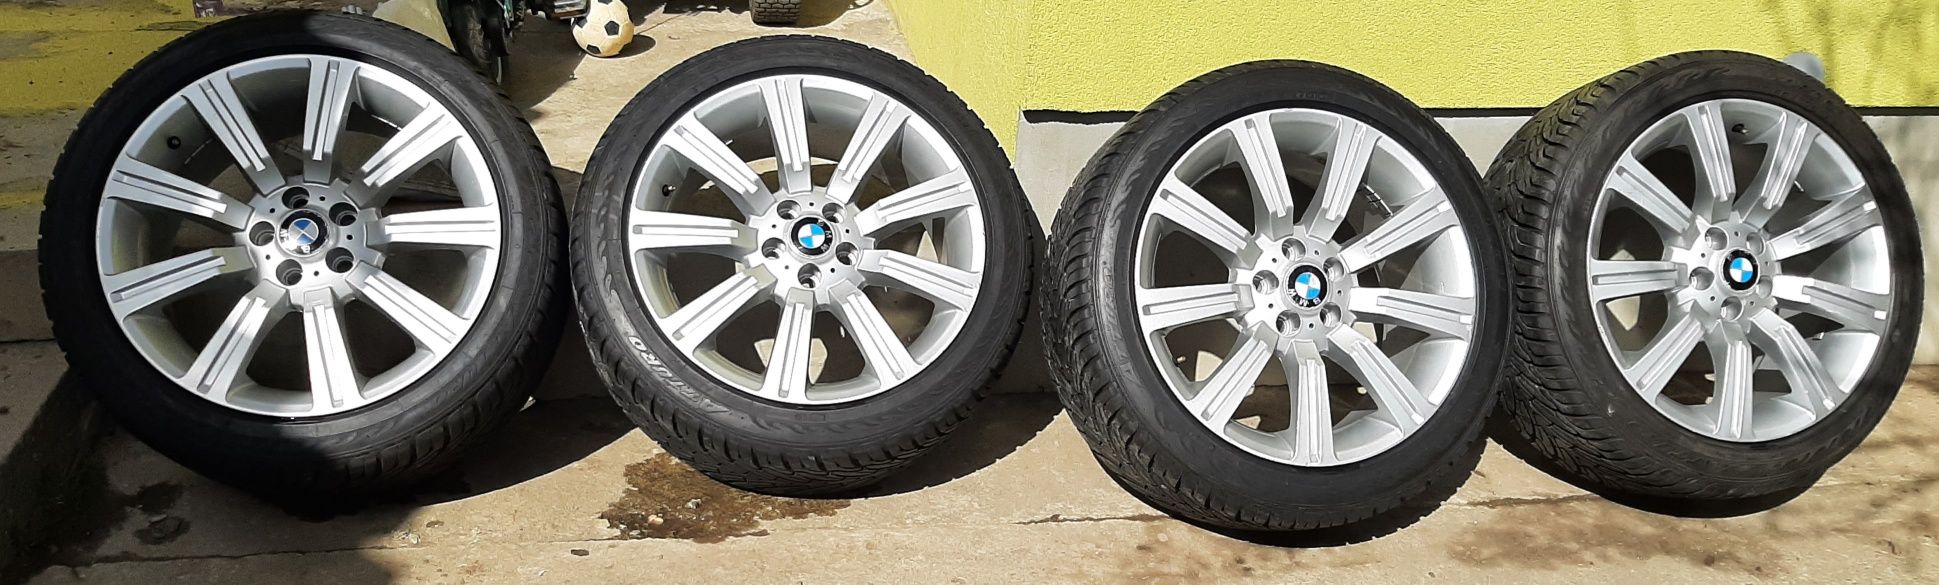 Диски шини 5×120 r20 Range Rover, BMW X5 275×40 r20